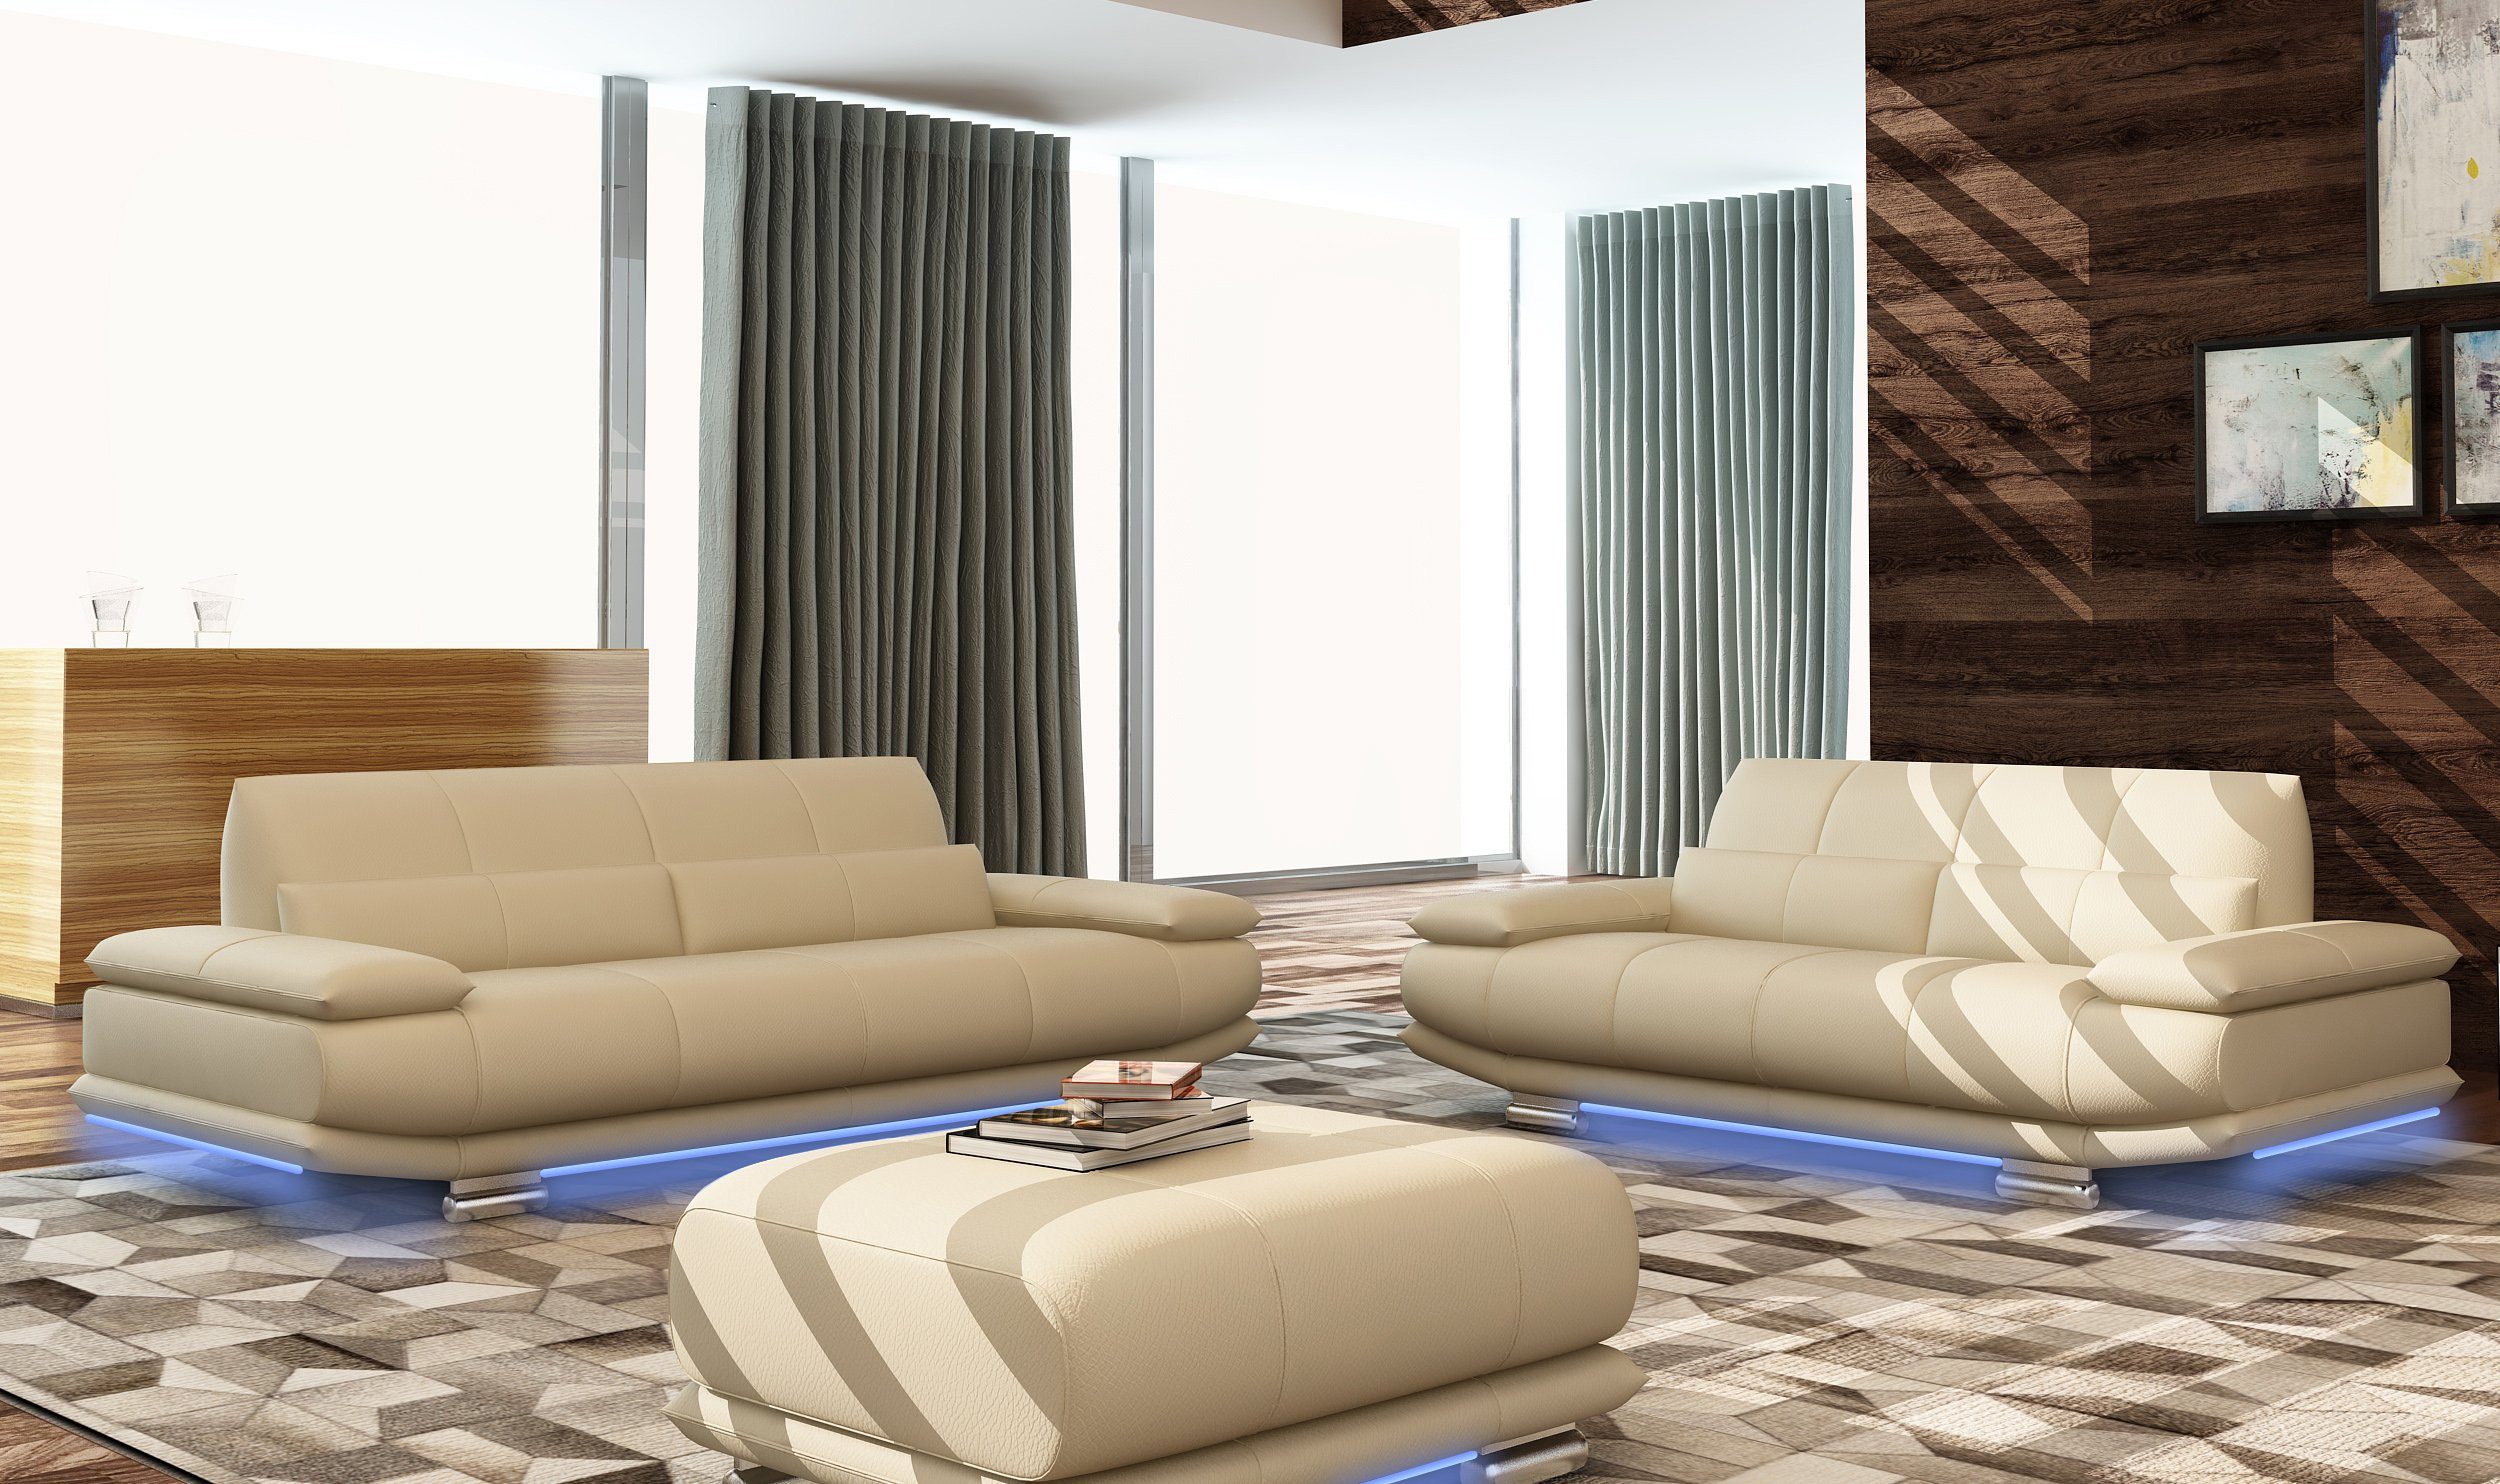 Made Sofa Leder Sitz, JVmoebel 3+2+1 Sofas in Europe Couchen Couch Komplett Garnitur Polster